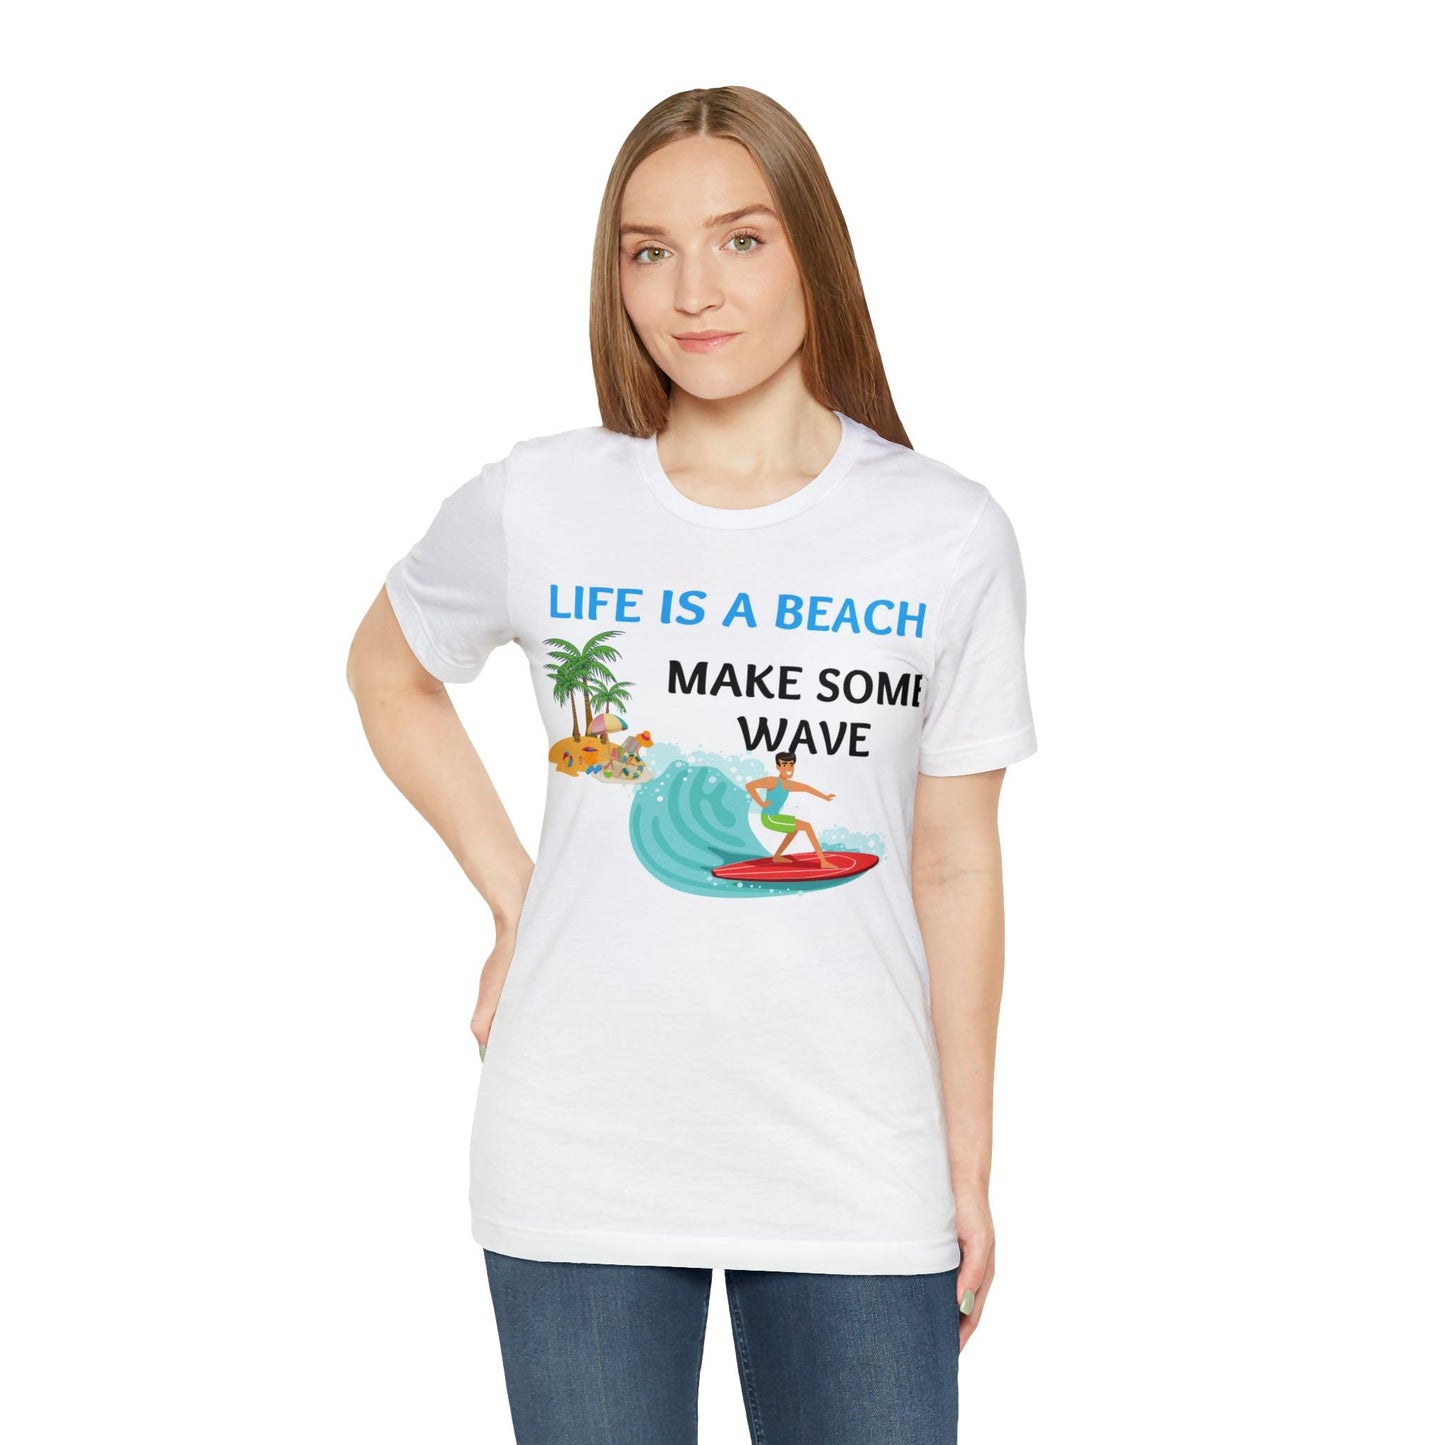 Life is a Beach shirt, Beach t-shirt, Summer shirt, Relaxing beachwear, Coastal fashion, Beach-inspired clothing, Beach adventure apparel